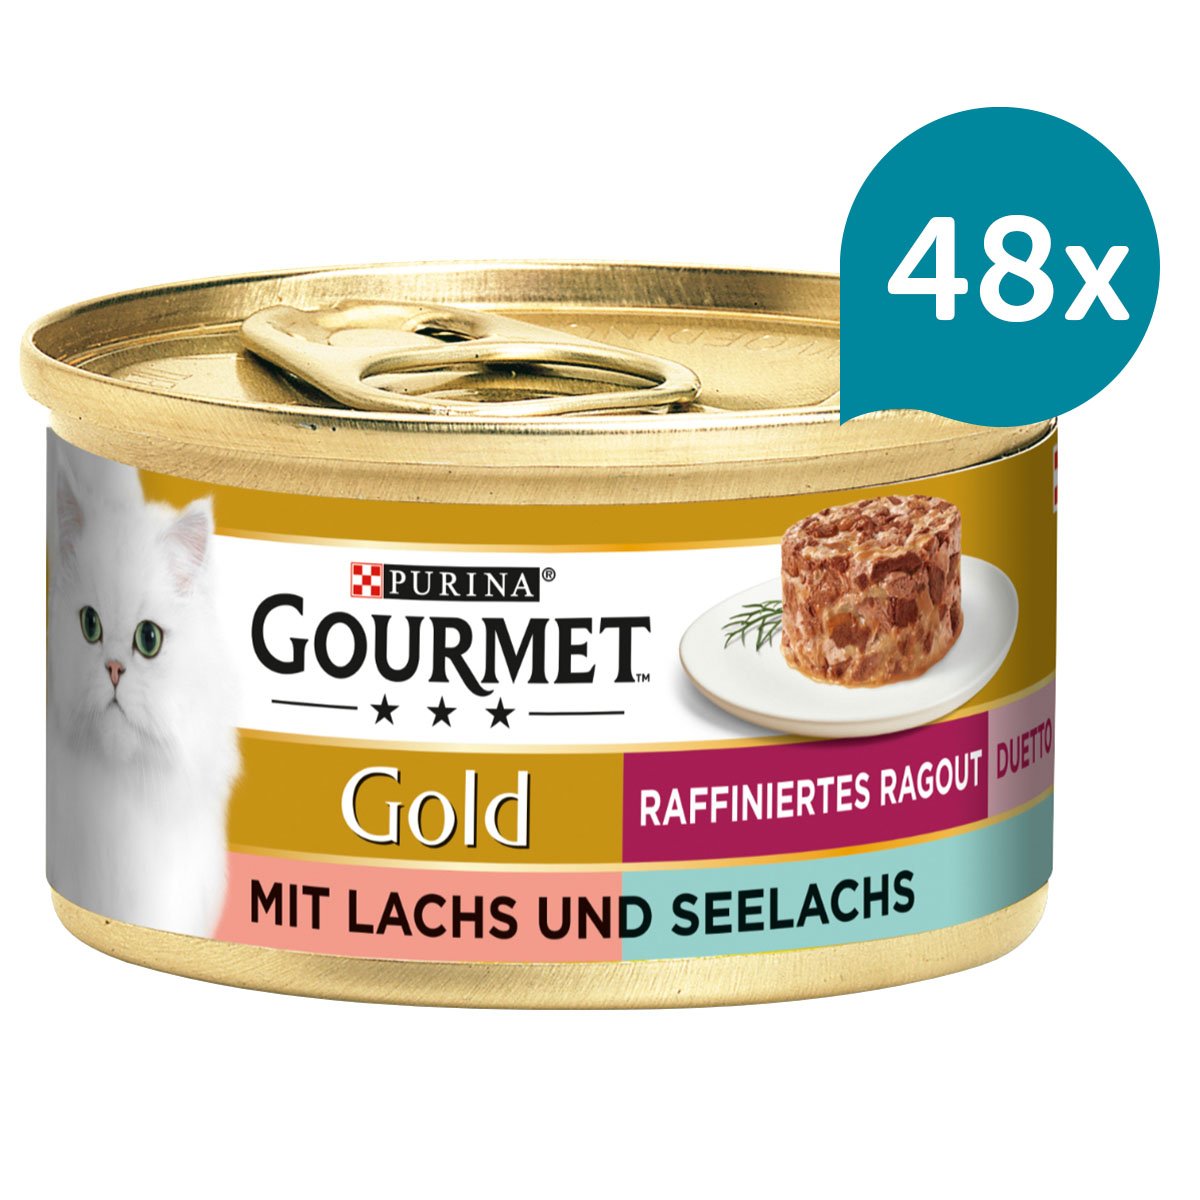 GOURMET Gold Raffiniertes Ragout Duetto mit Lachs und Seelachs 48x85g